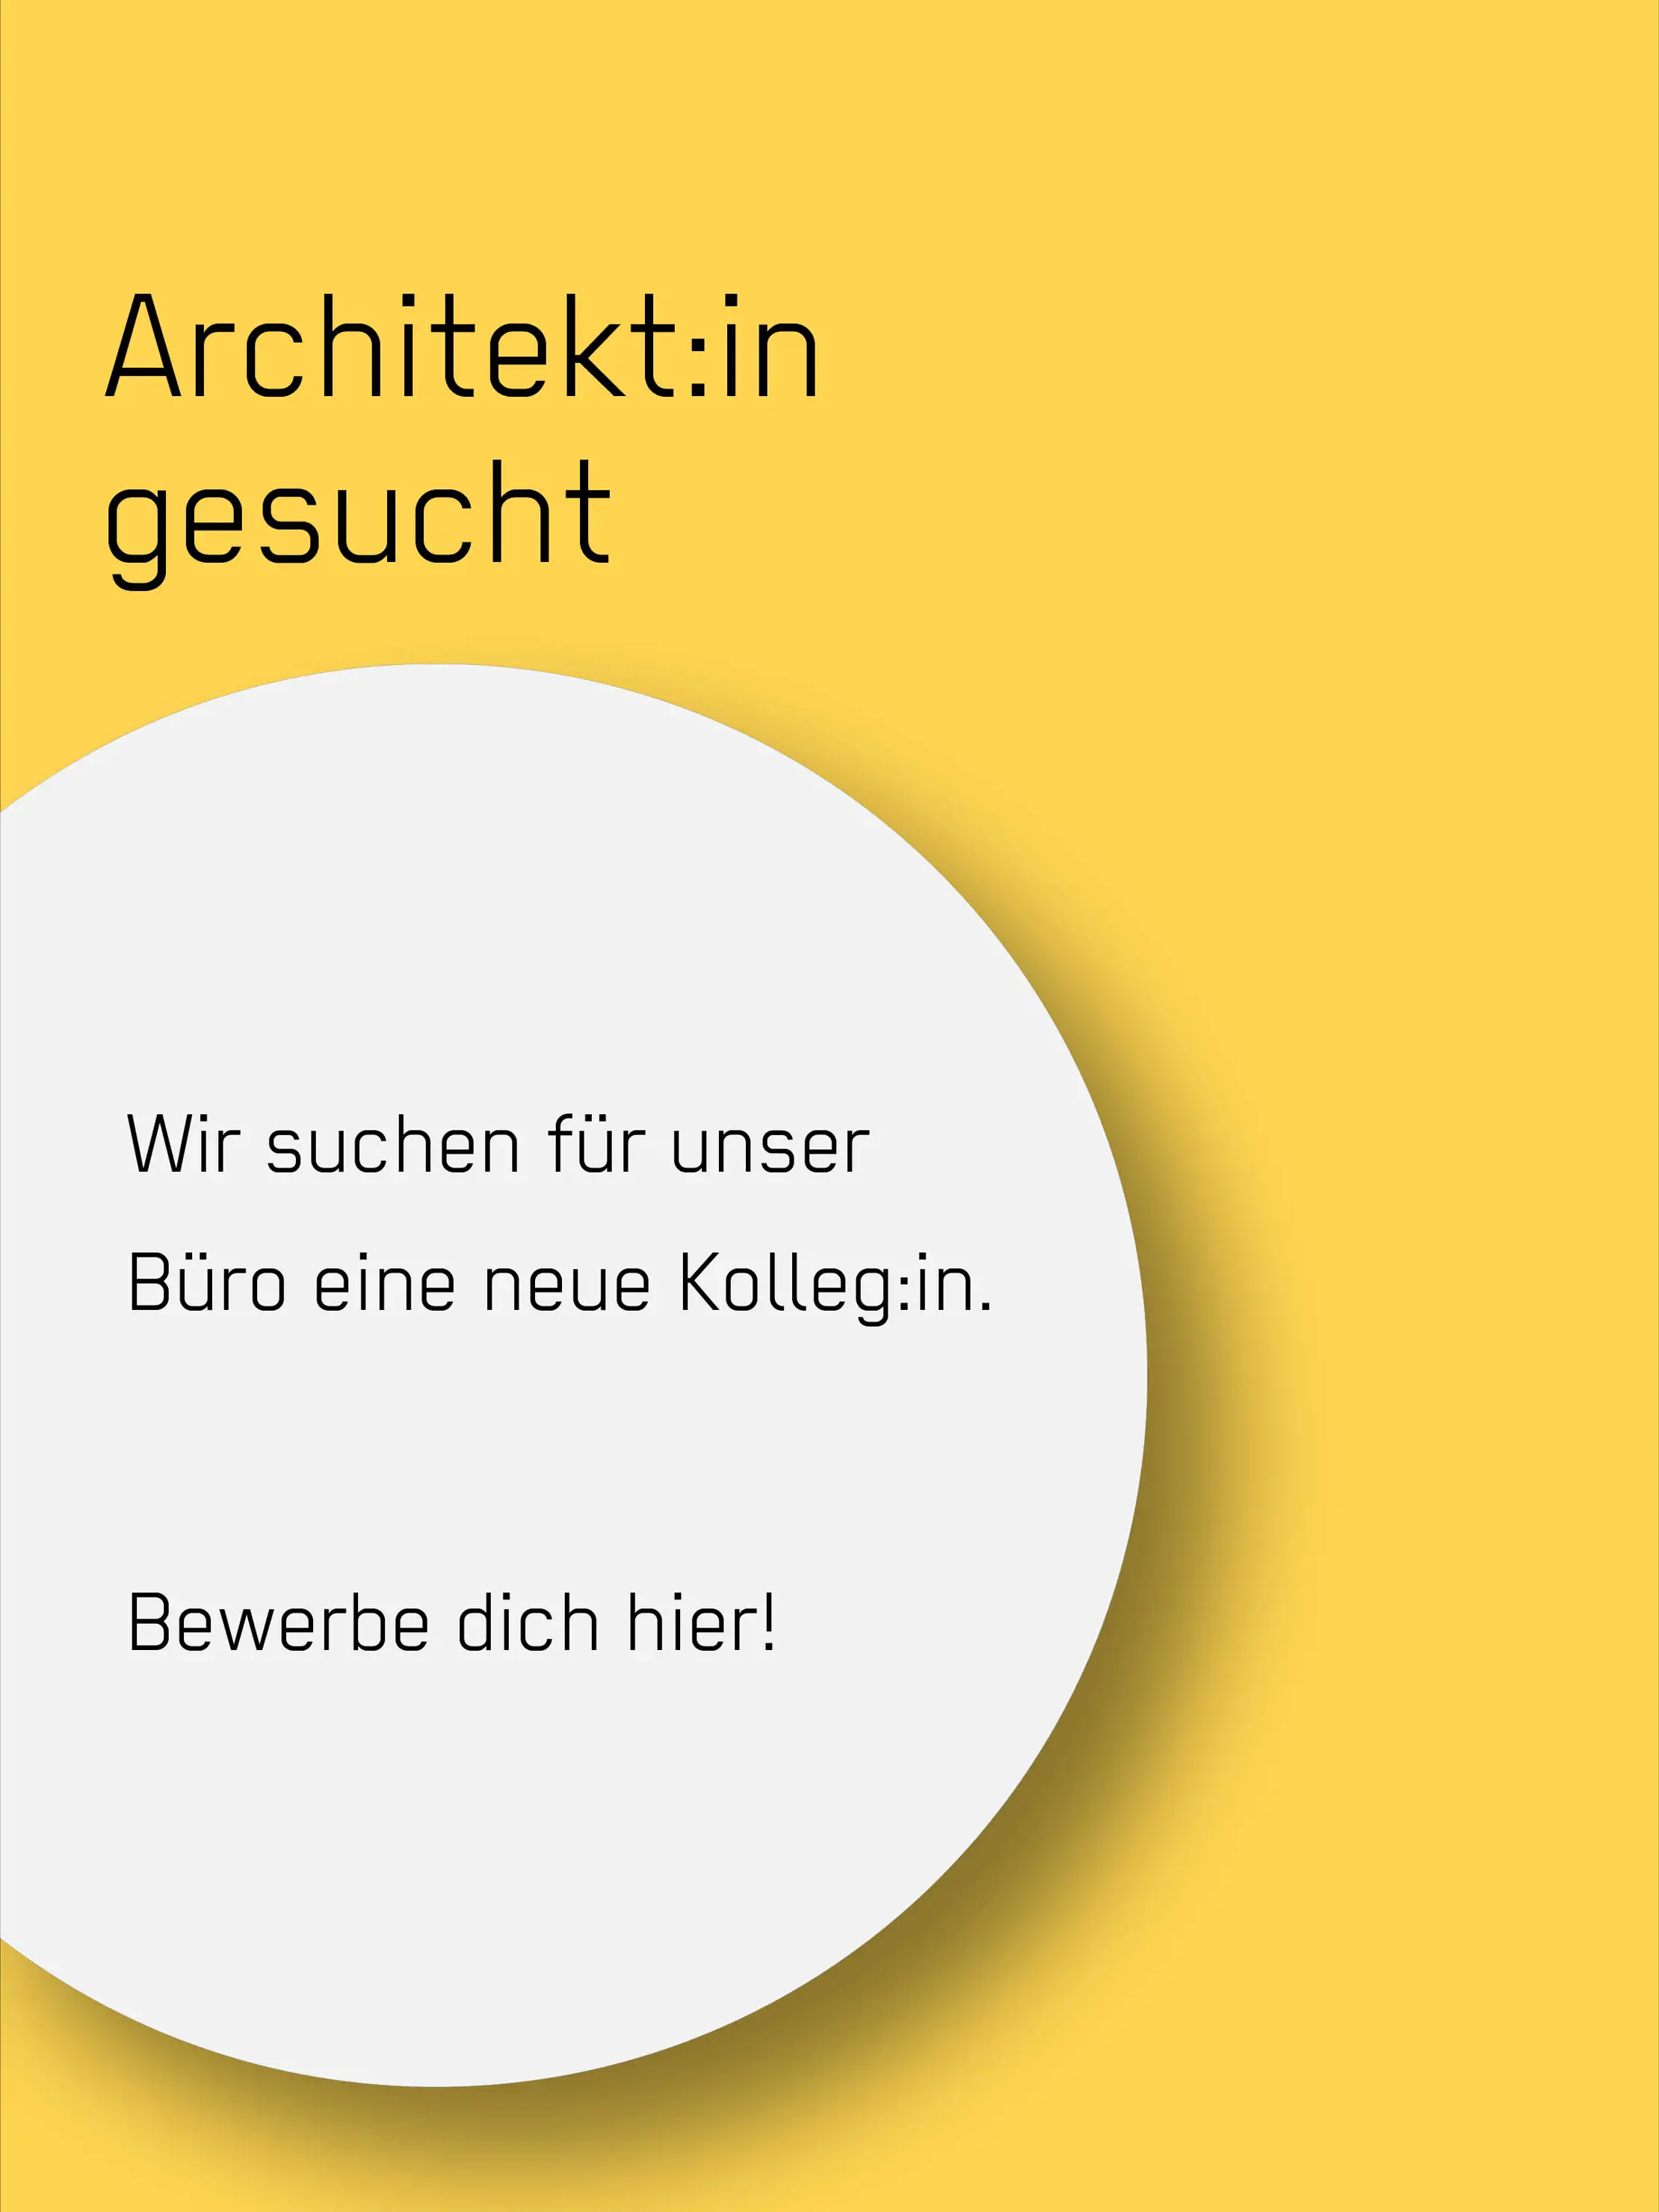 Architekt_in